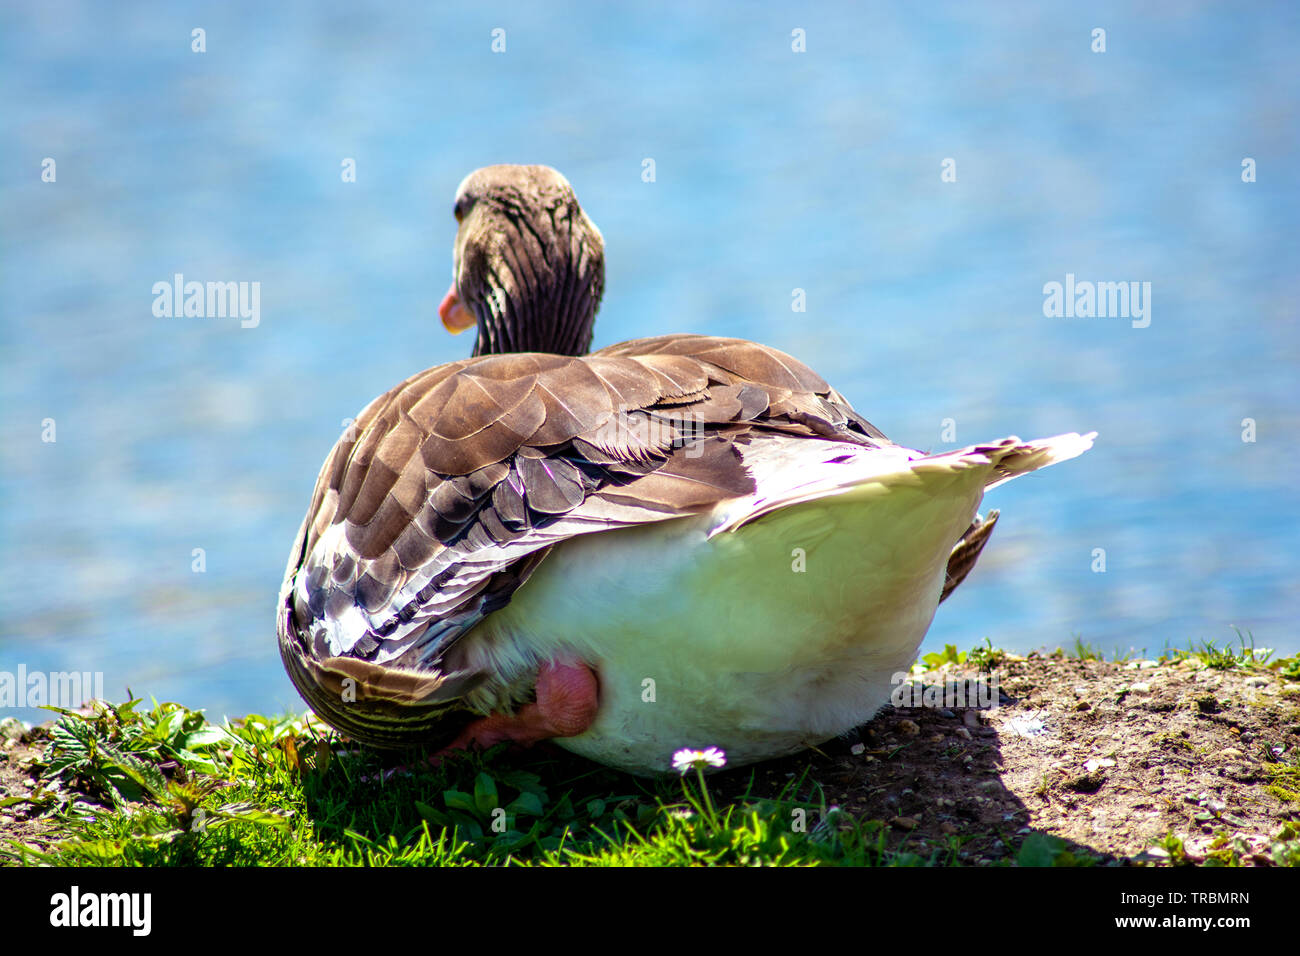 Concept wildlife : The sleeping goose Stock Photo